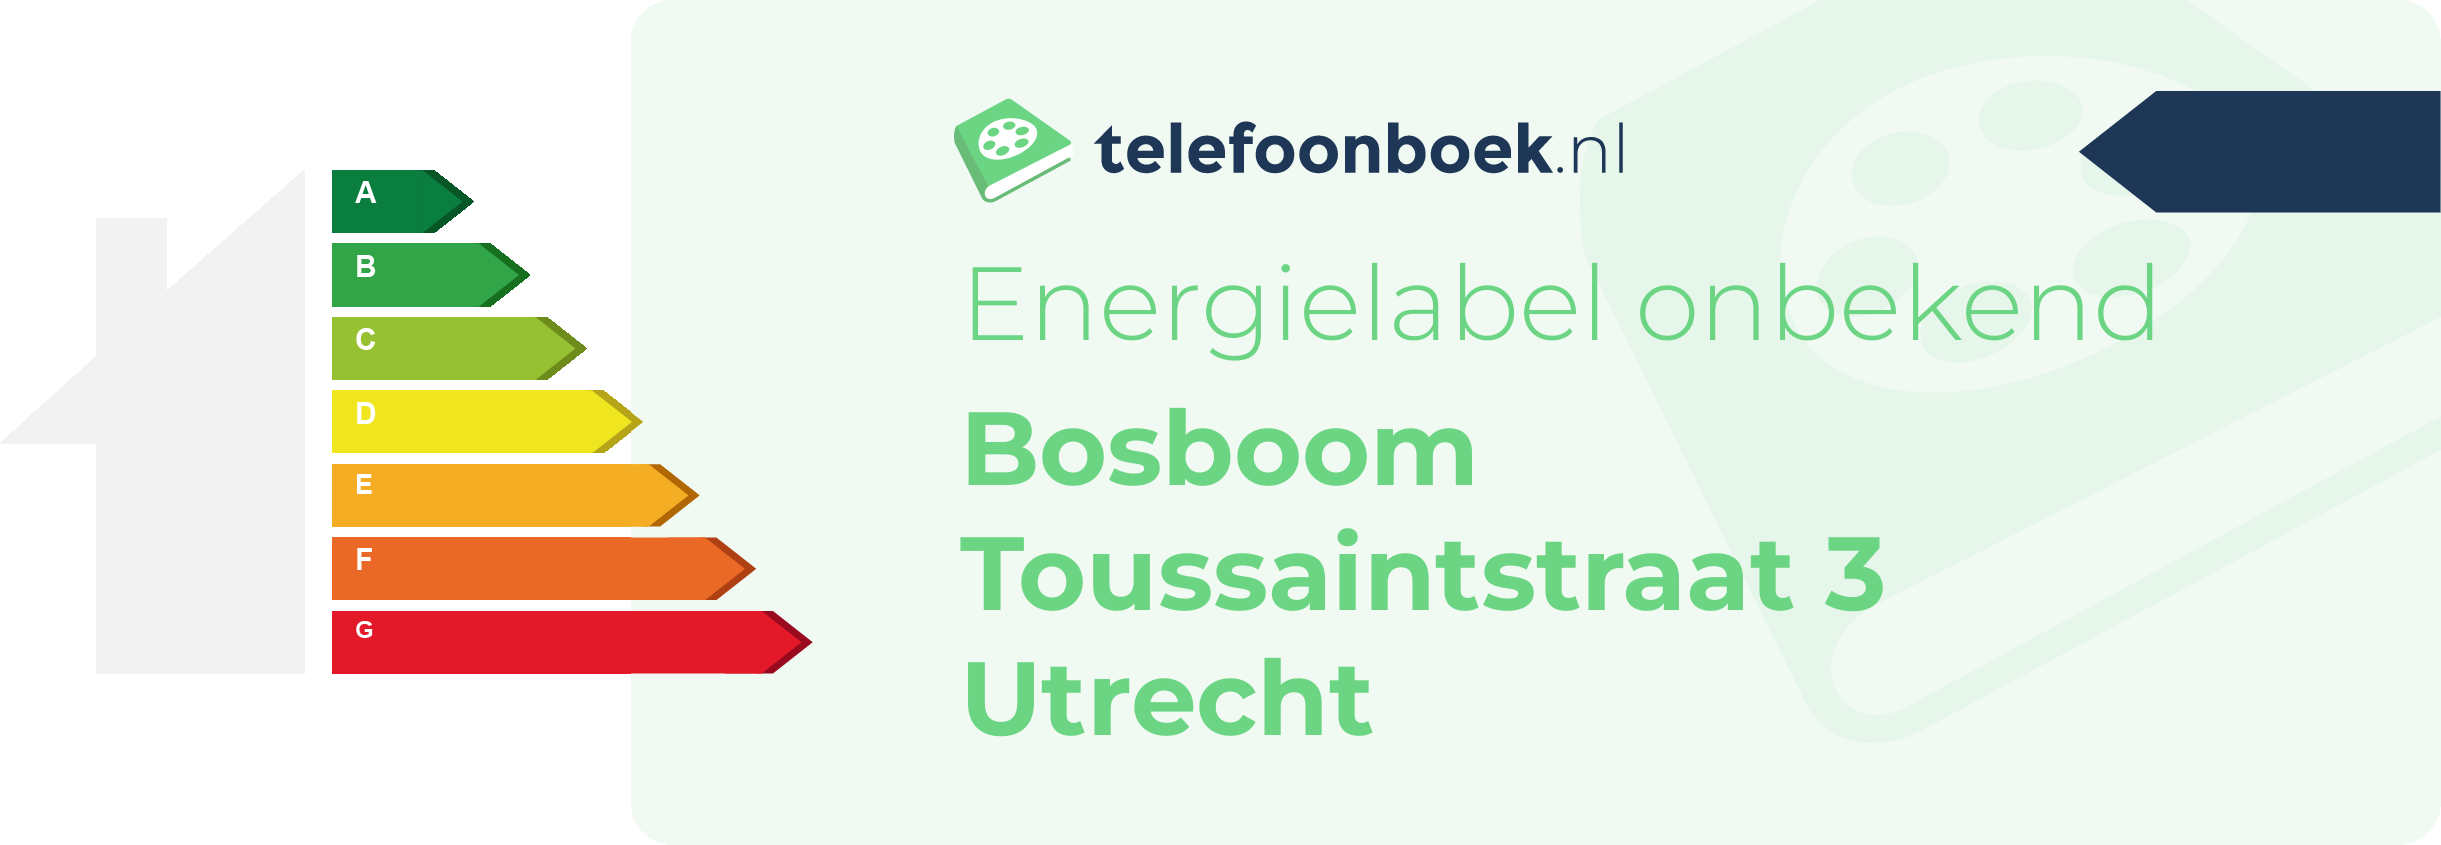 Energielabel Bosboom Toussaintstraat 3 Utrecht